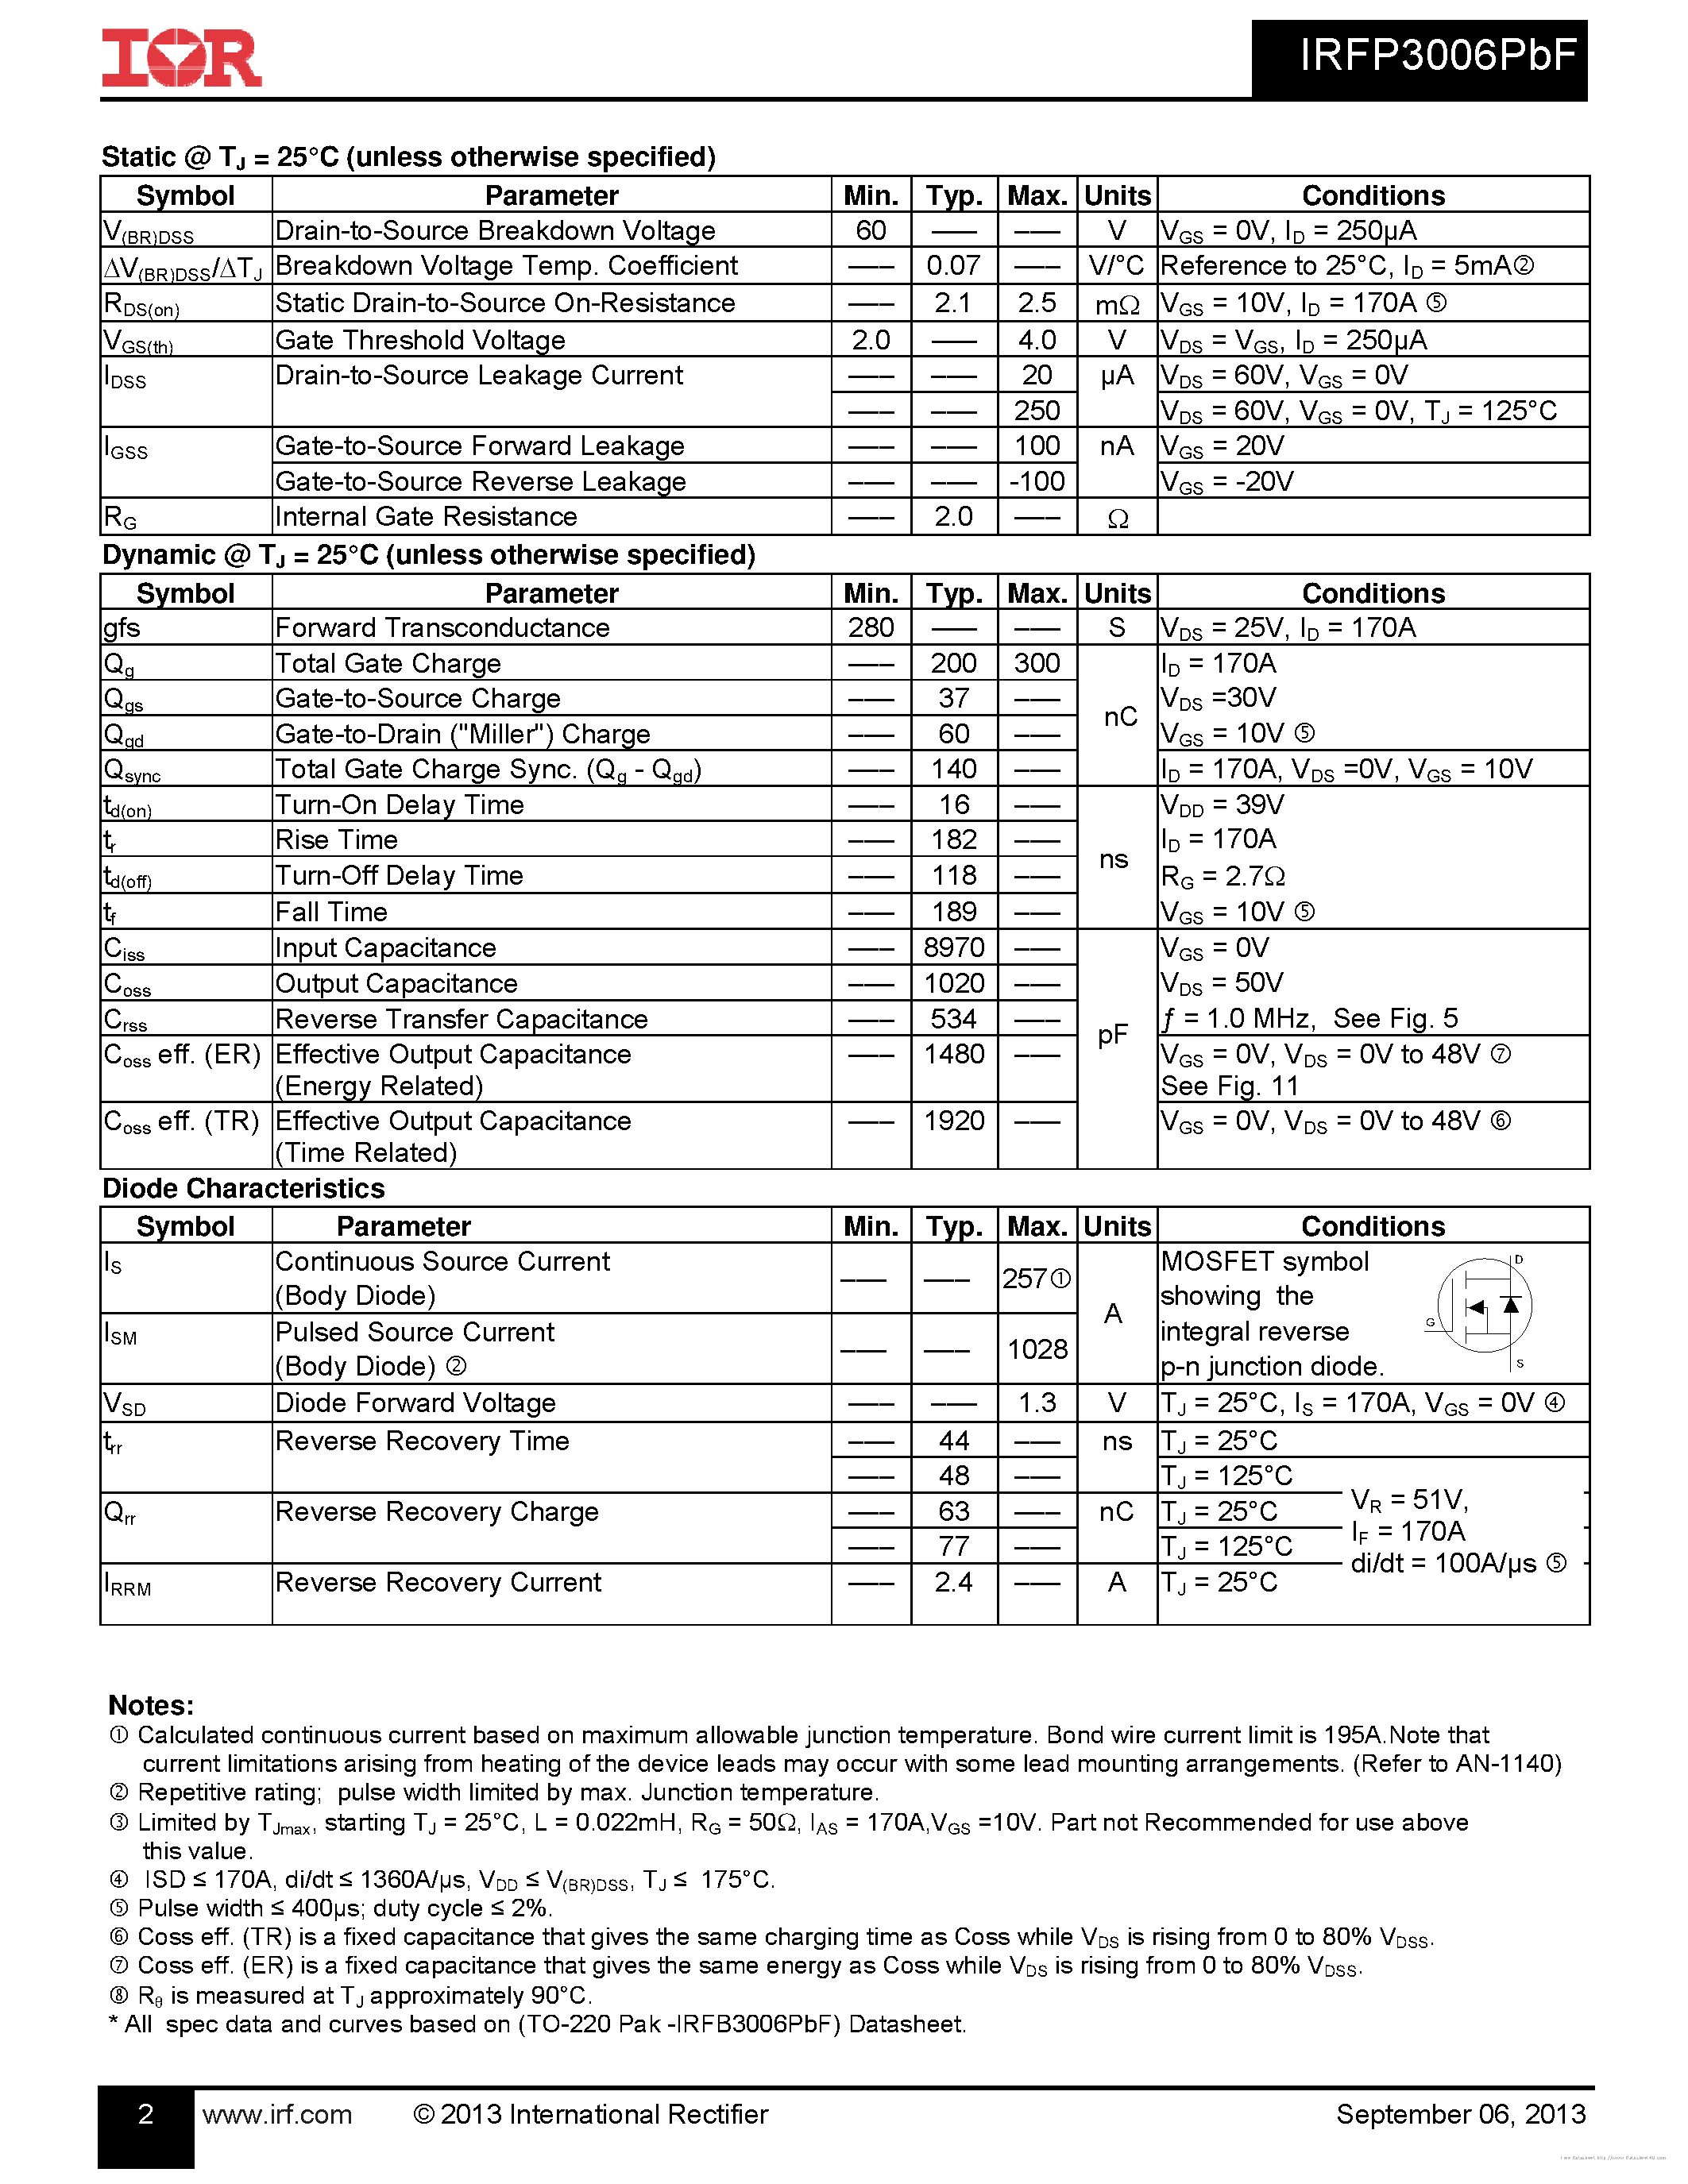 Datasheet IRFP3006PBF - page 2